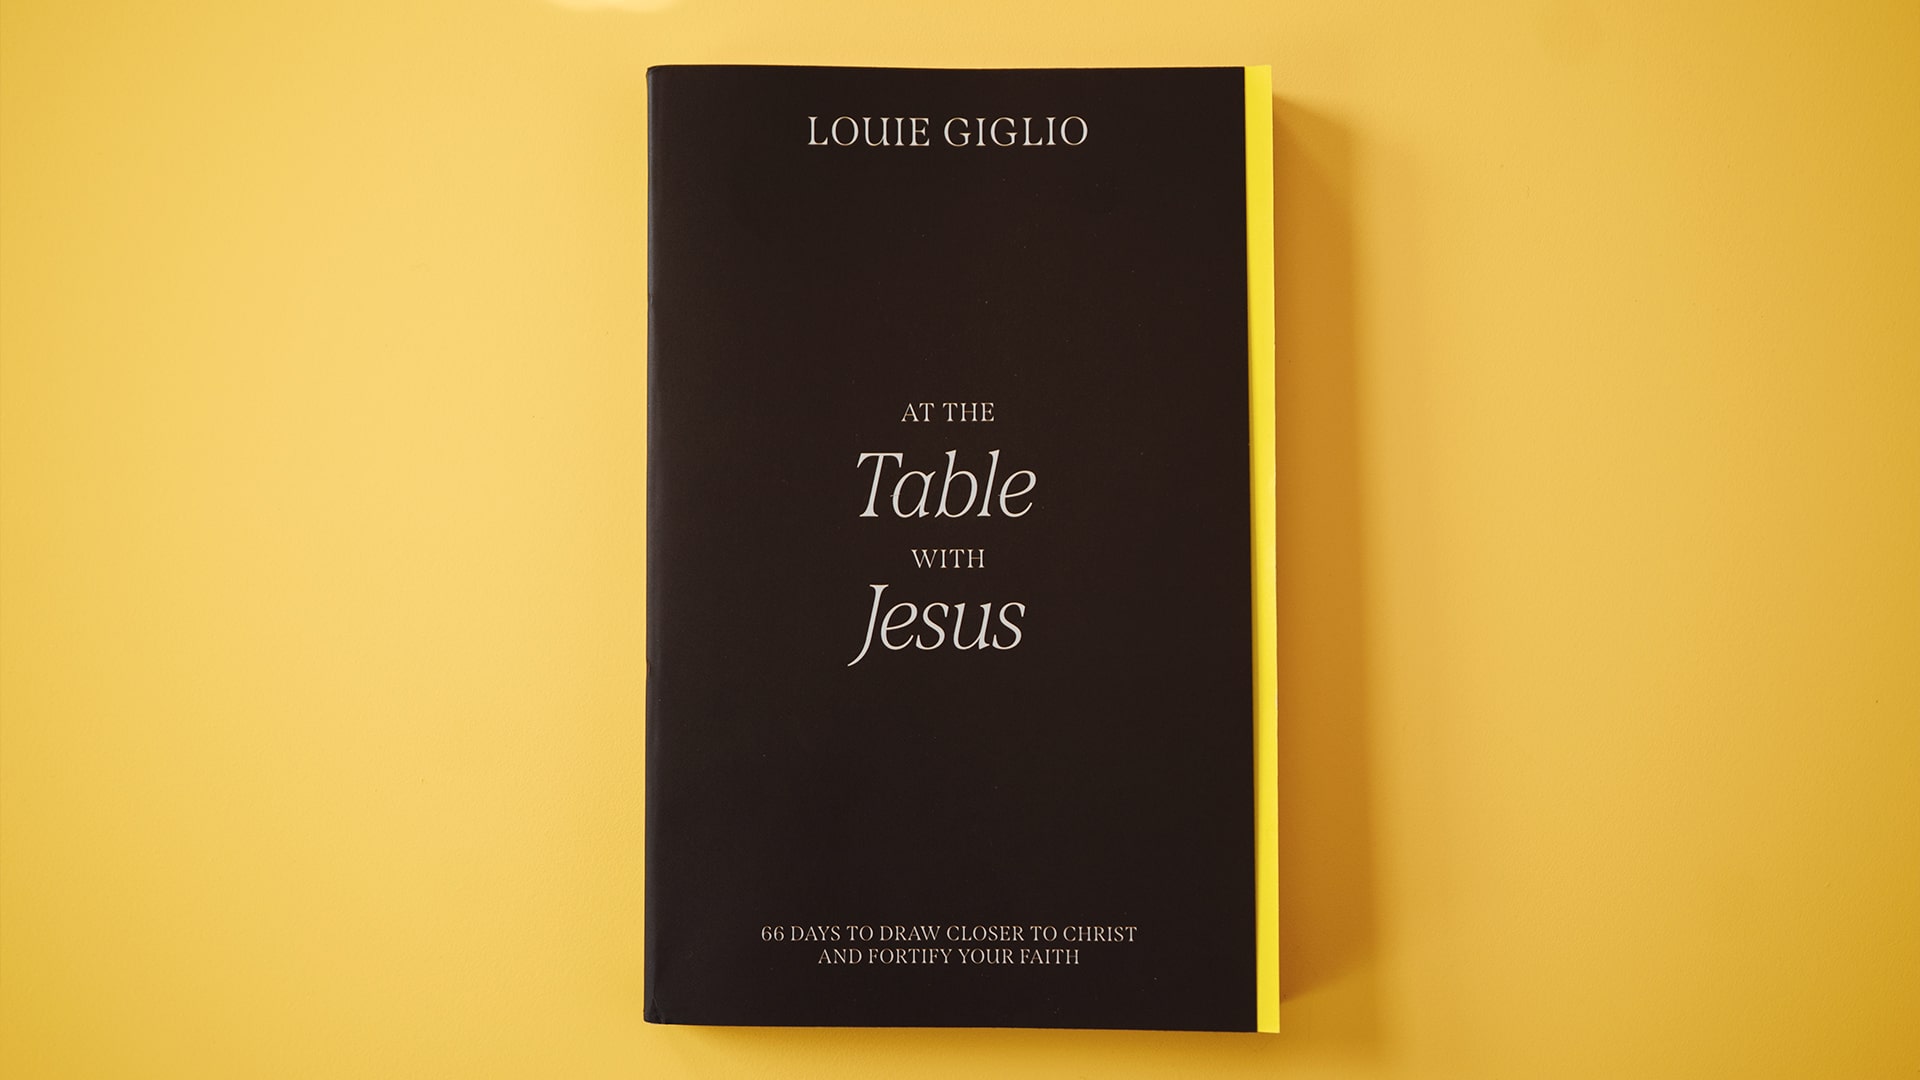 Louie Giglio – Audio Books, Best Sellers, Author Bio